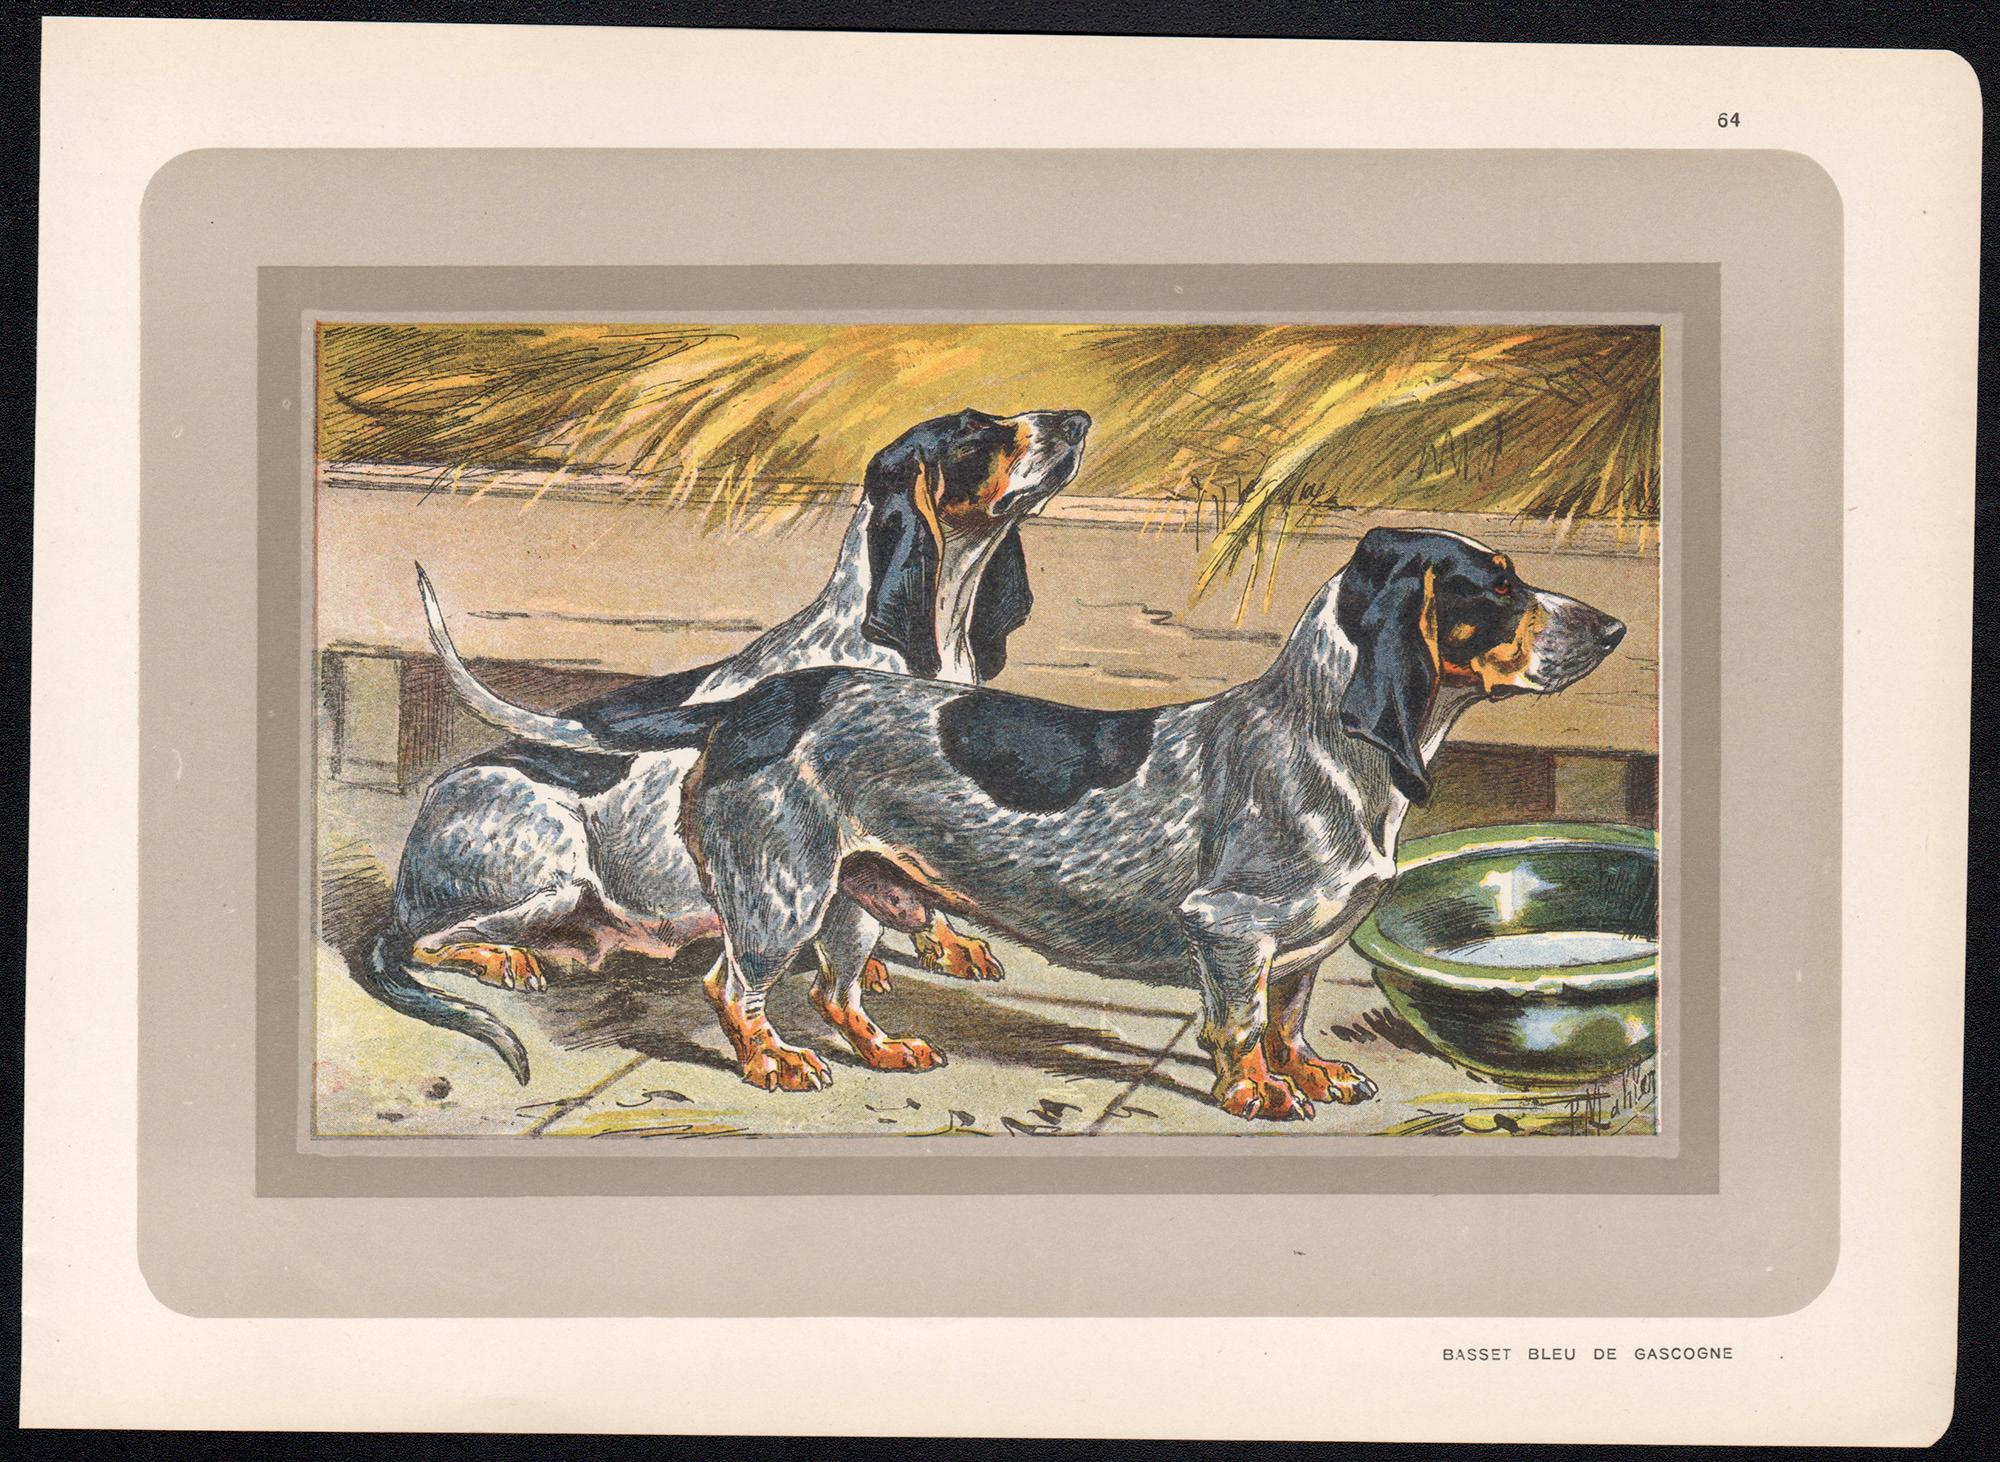 Basset Bleu de Gascogne, impression chromolithographie de chien de chasse français, années 1930 - Print de P. Mahler